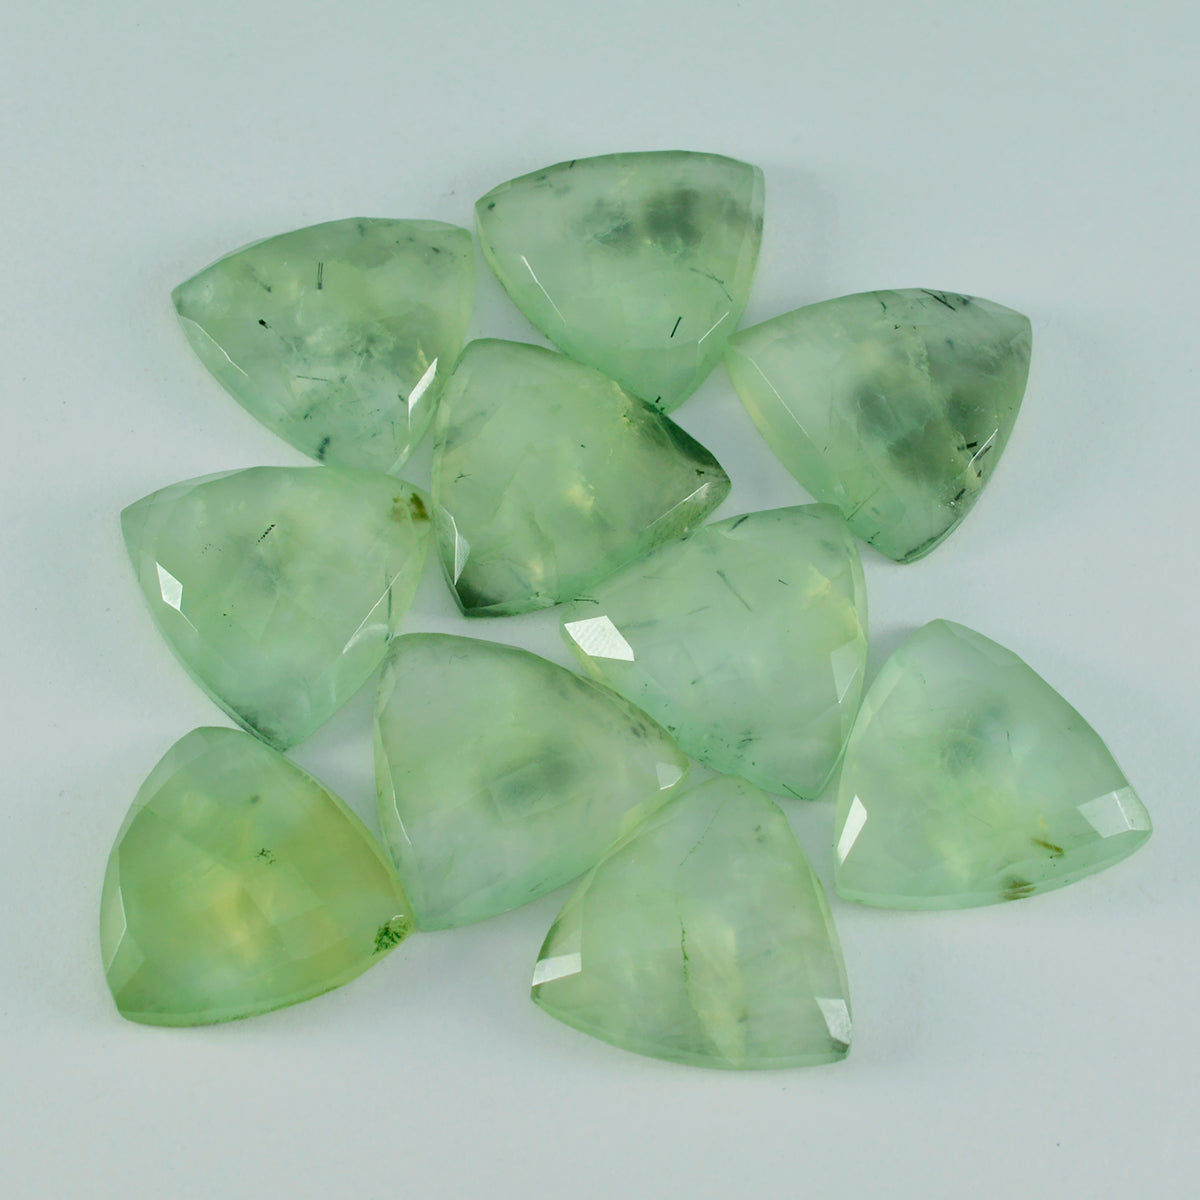 riyogems 1 шт., зеленый пренит, ограненный 11x11 мм, милый качественный драгоценный камень в форме триллиона